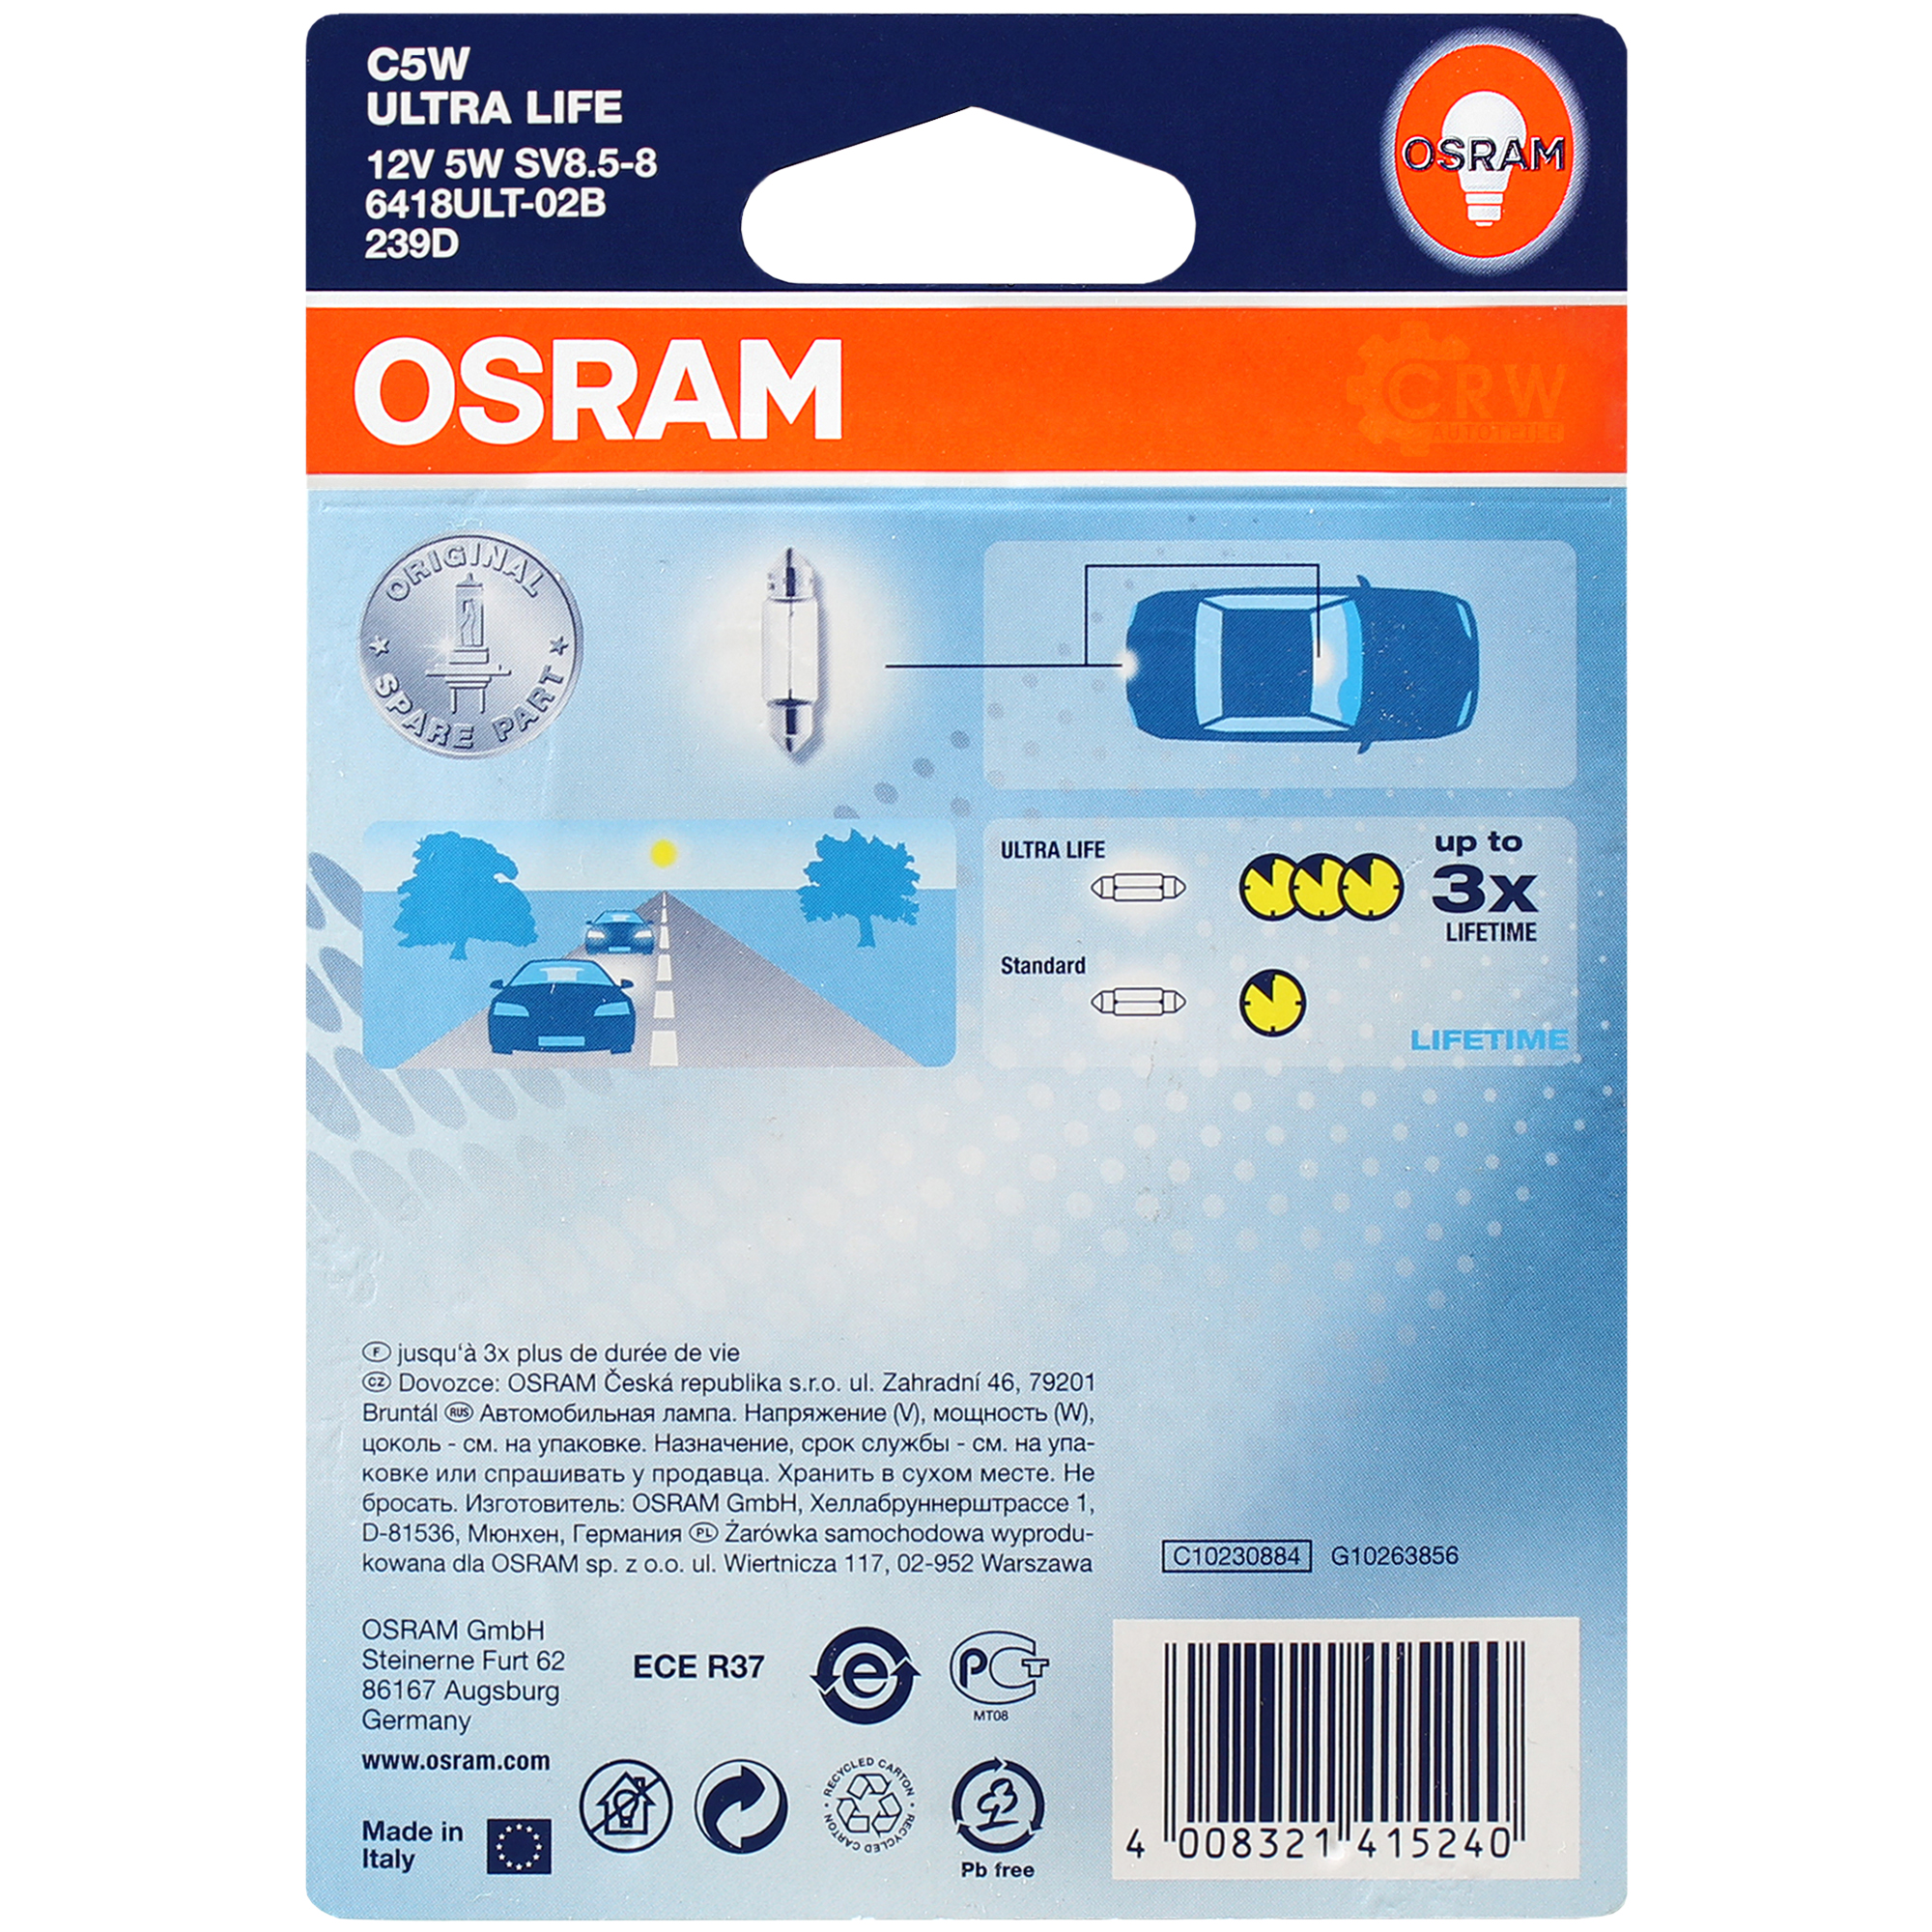 OSRAM C5W 12V 5W SV85-8 soffitte ULTRA LIFE 2 Stück Kit Set 6418ULT-02B